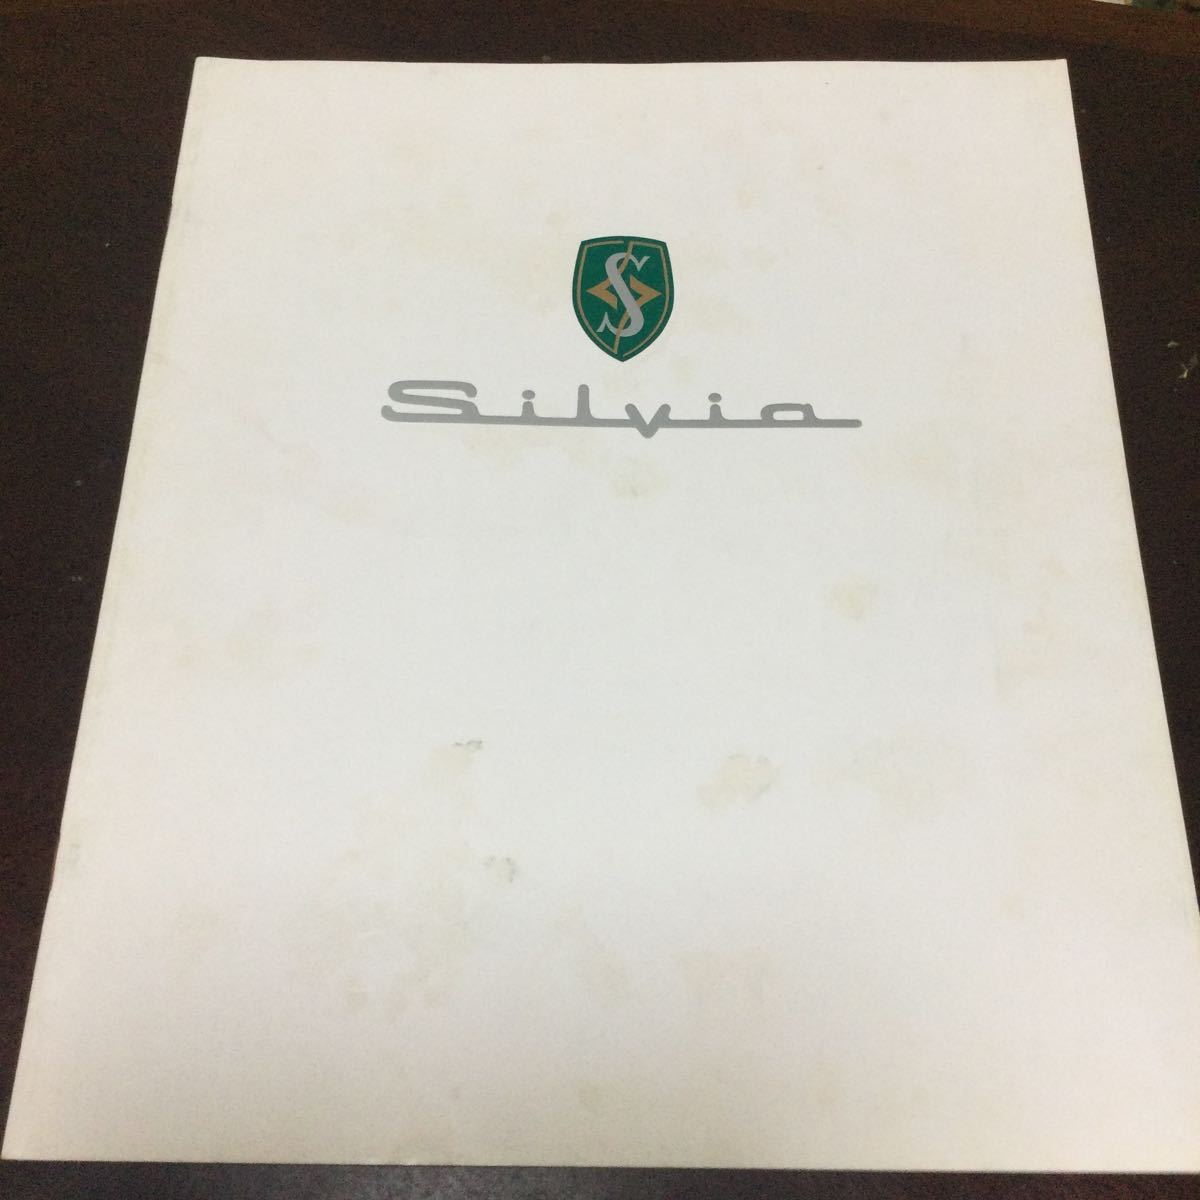  редкость! Silvia S14 каталог эпоха Heisei 5 год подлинная вещь Nissan 